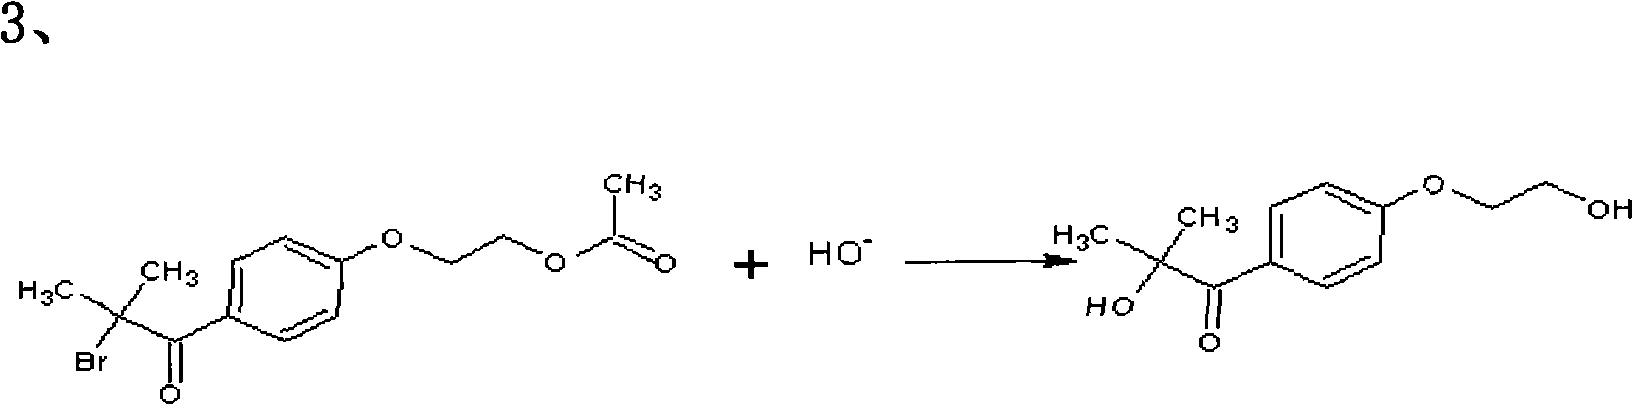 Preparation method of 2-hydroxyl-1-{4-(2-hydroxyethyl) phenyl}-2-methyl-1-acetone